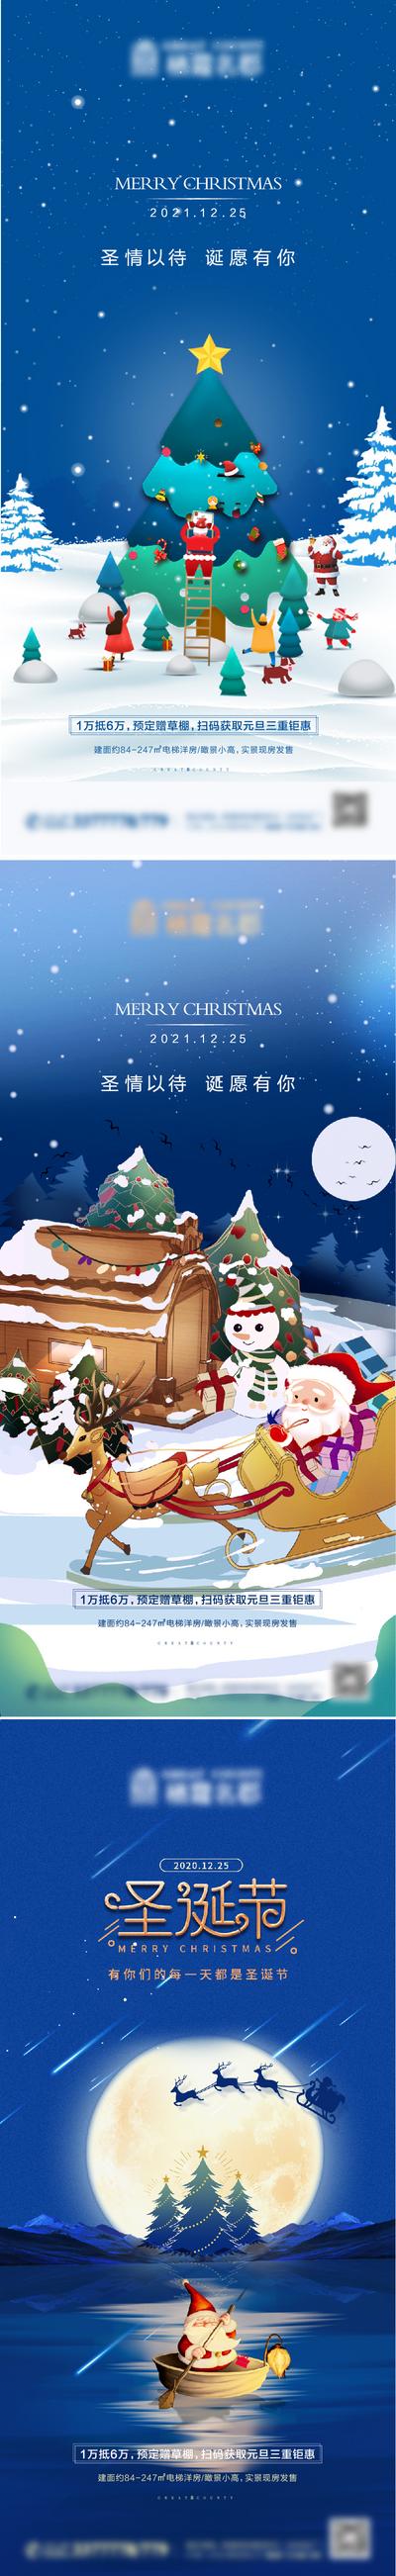 南门网 海报 房地产 公历节日 圣诞节 插画 圣诞老人 系列